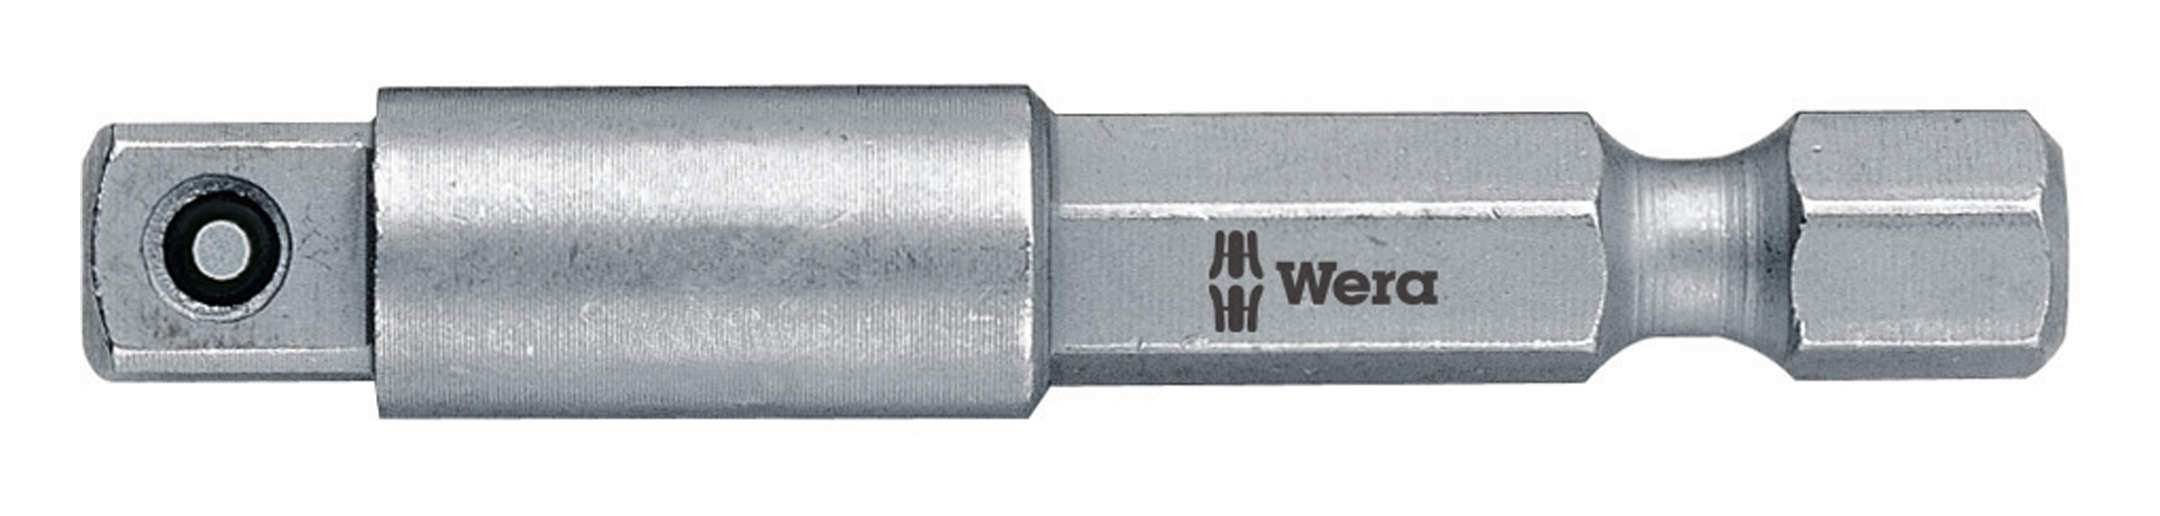 Wera Steckschlüssel, 1/4" 1/4" Adapter mm für Einsatz 50